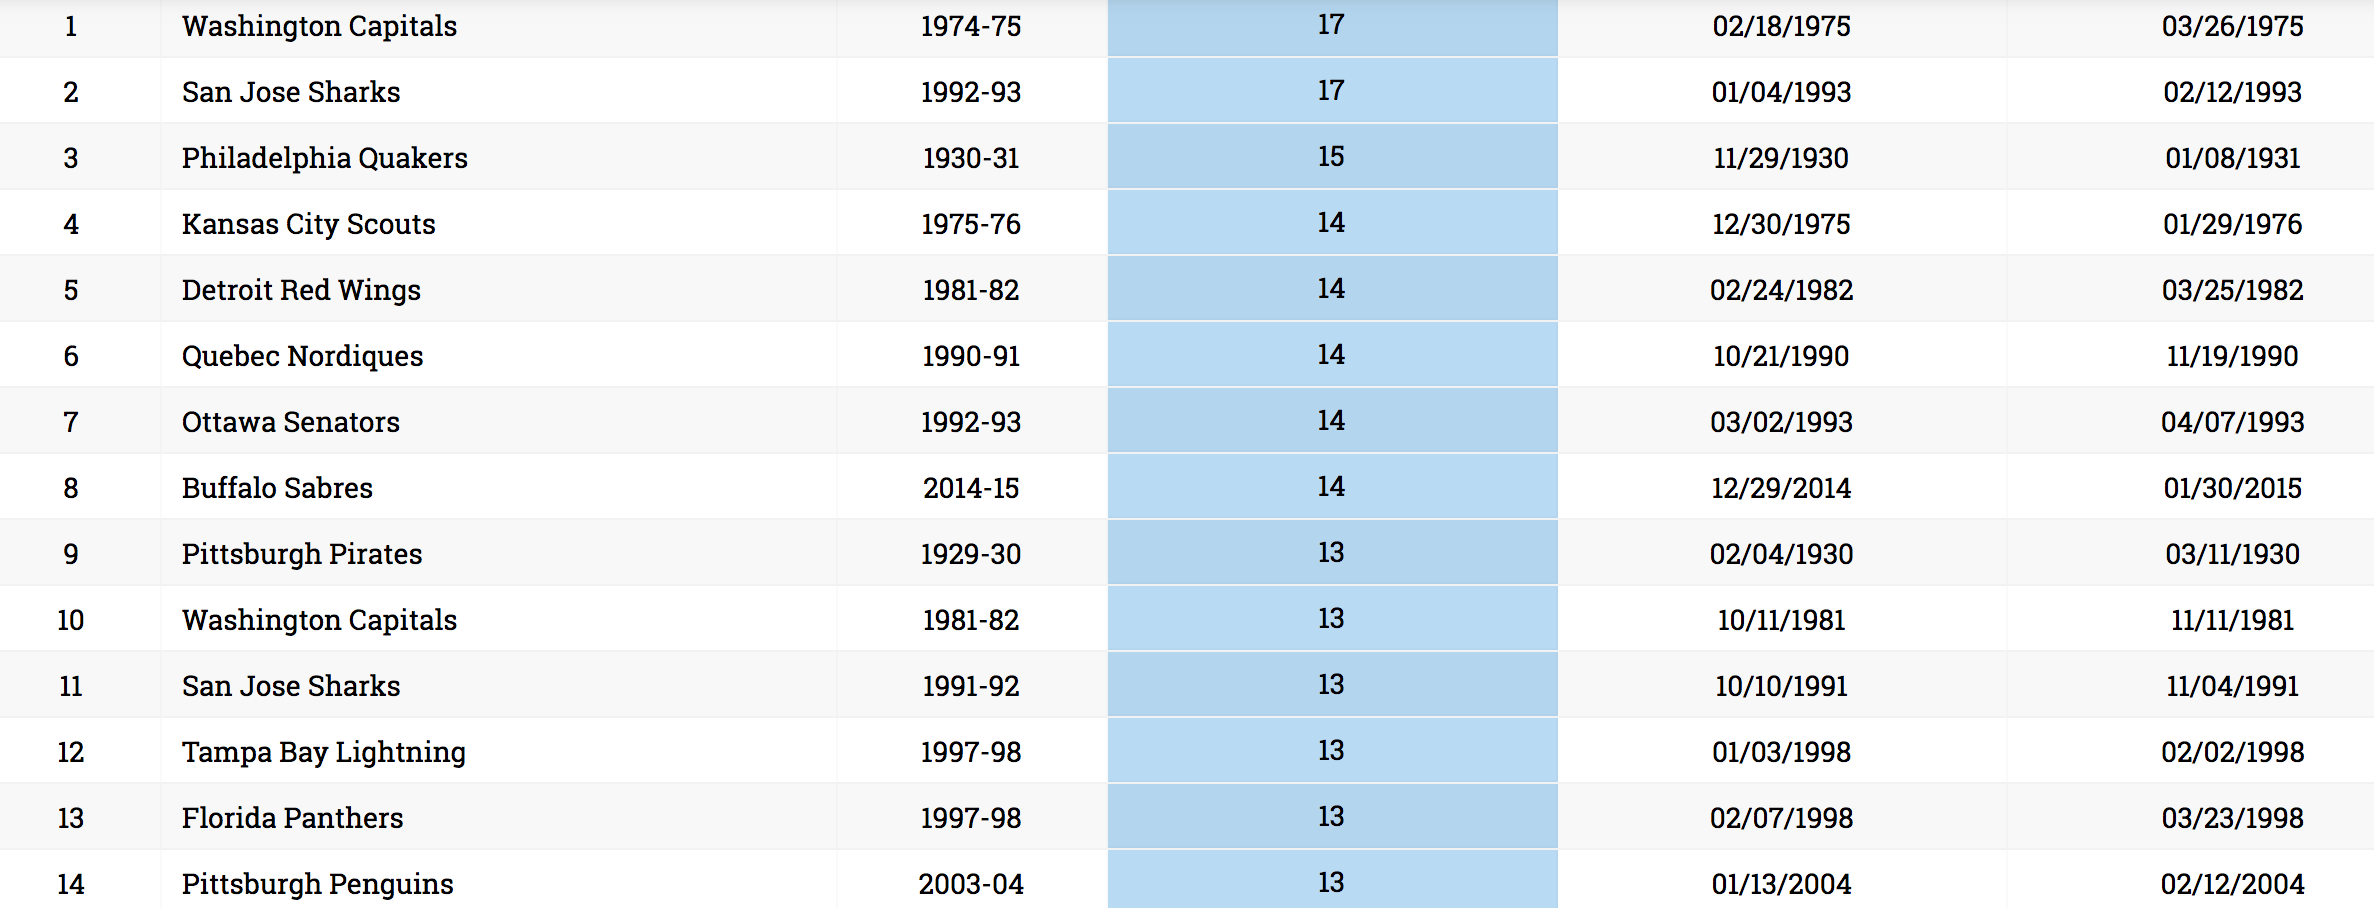 The longest losing streaks in NHL 